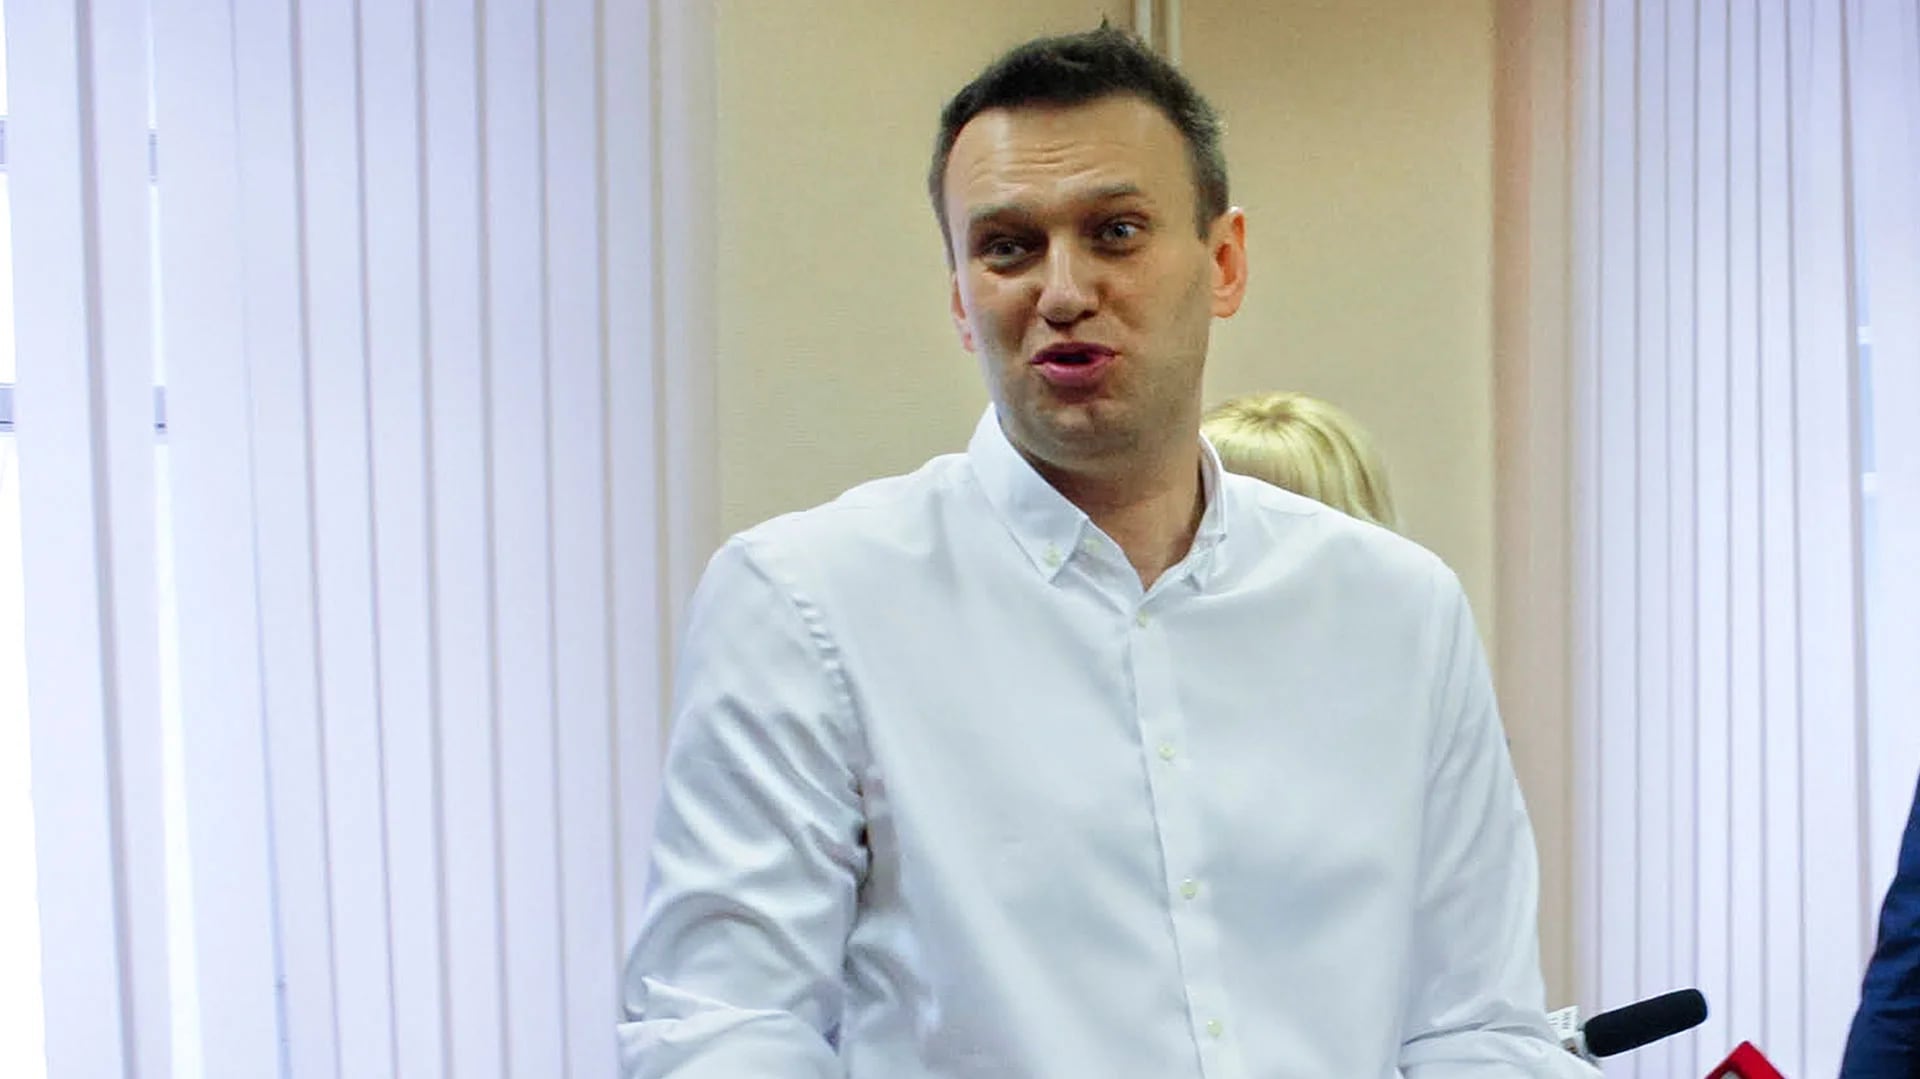 La esposa del abogado, Yulia Navalnaya, informó en Twitter que Navalny había sido arrestado (AP)